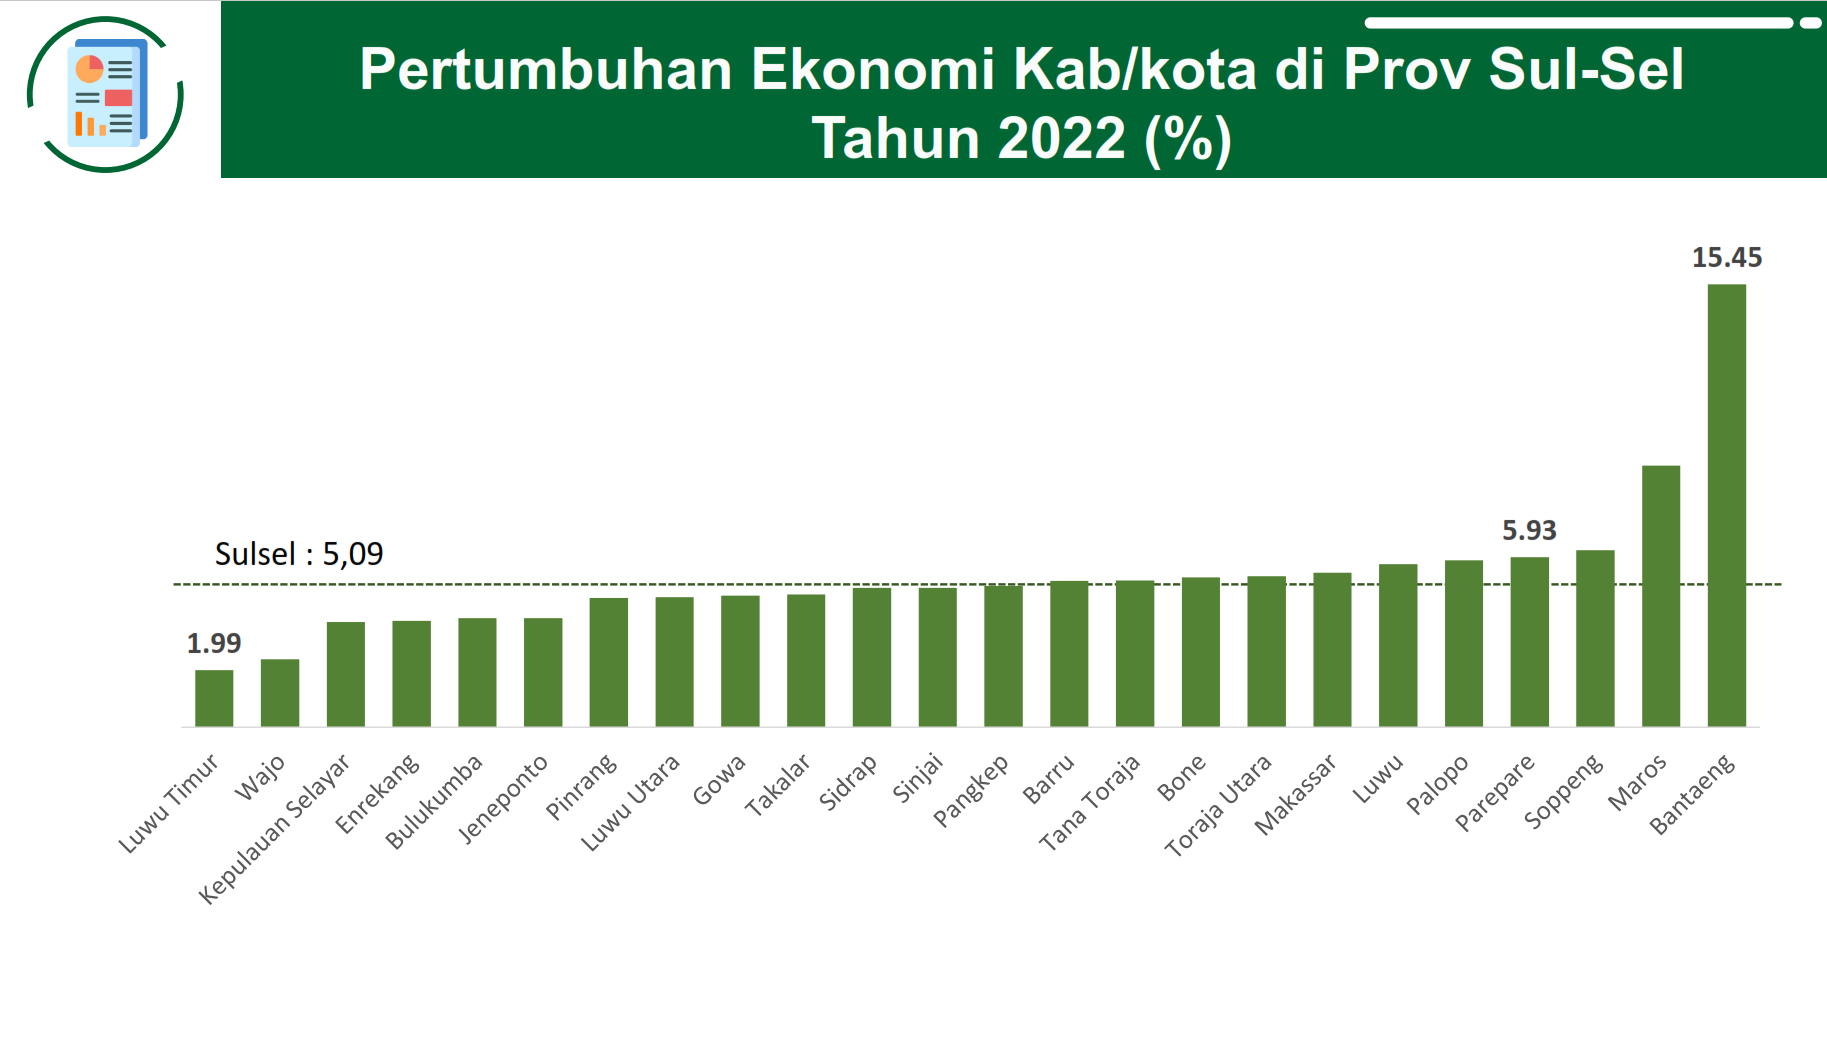 Pertumbuhan Ekonomi Kab/Kota di Sulsel Tahun 2022 ( %)